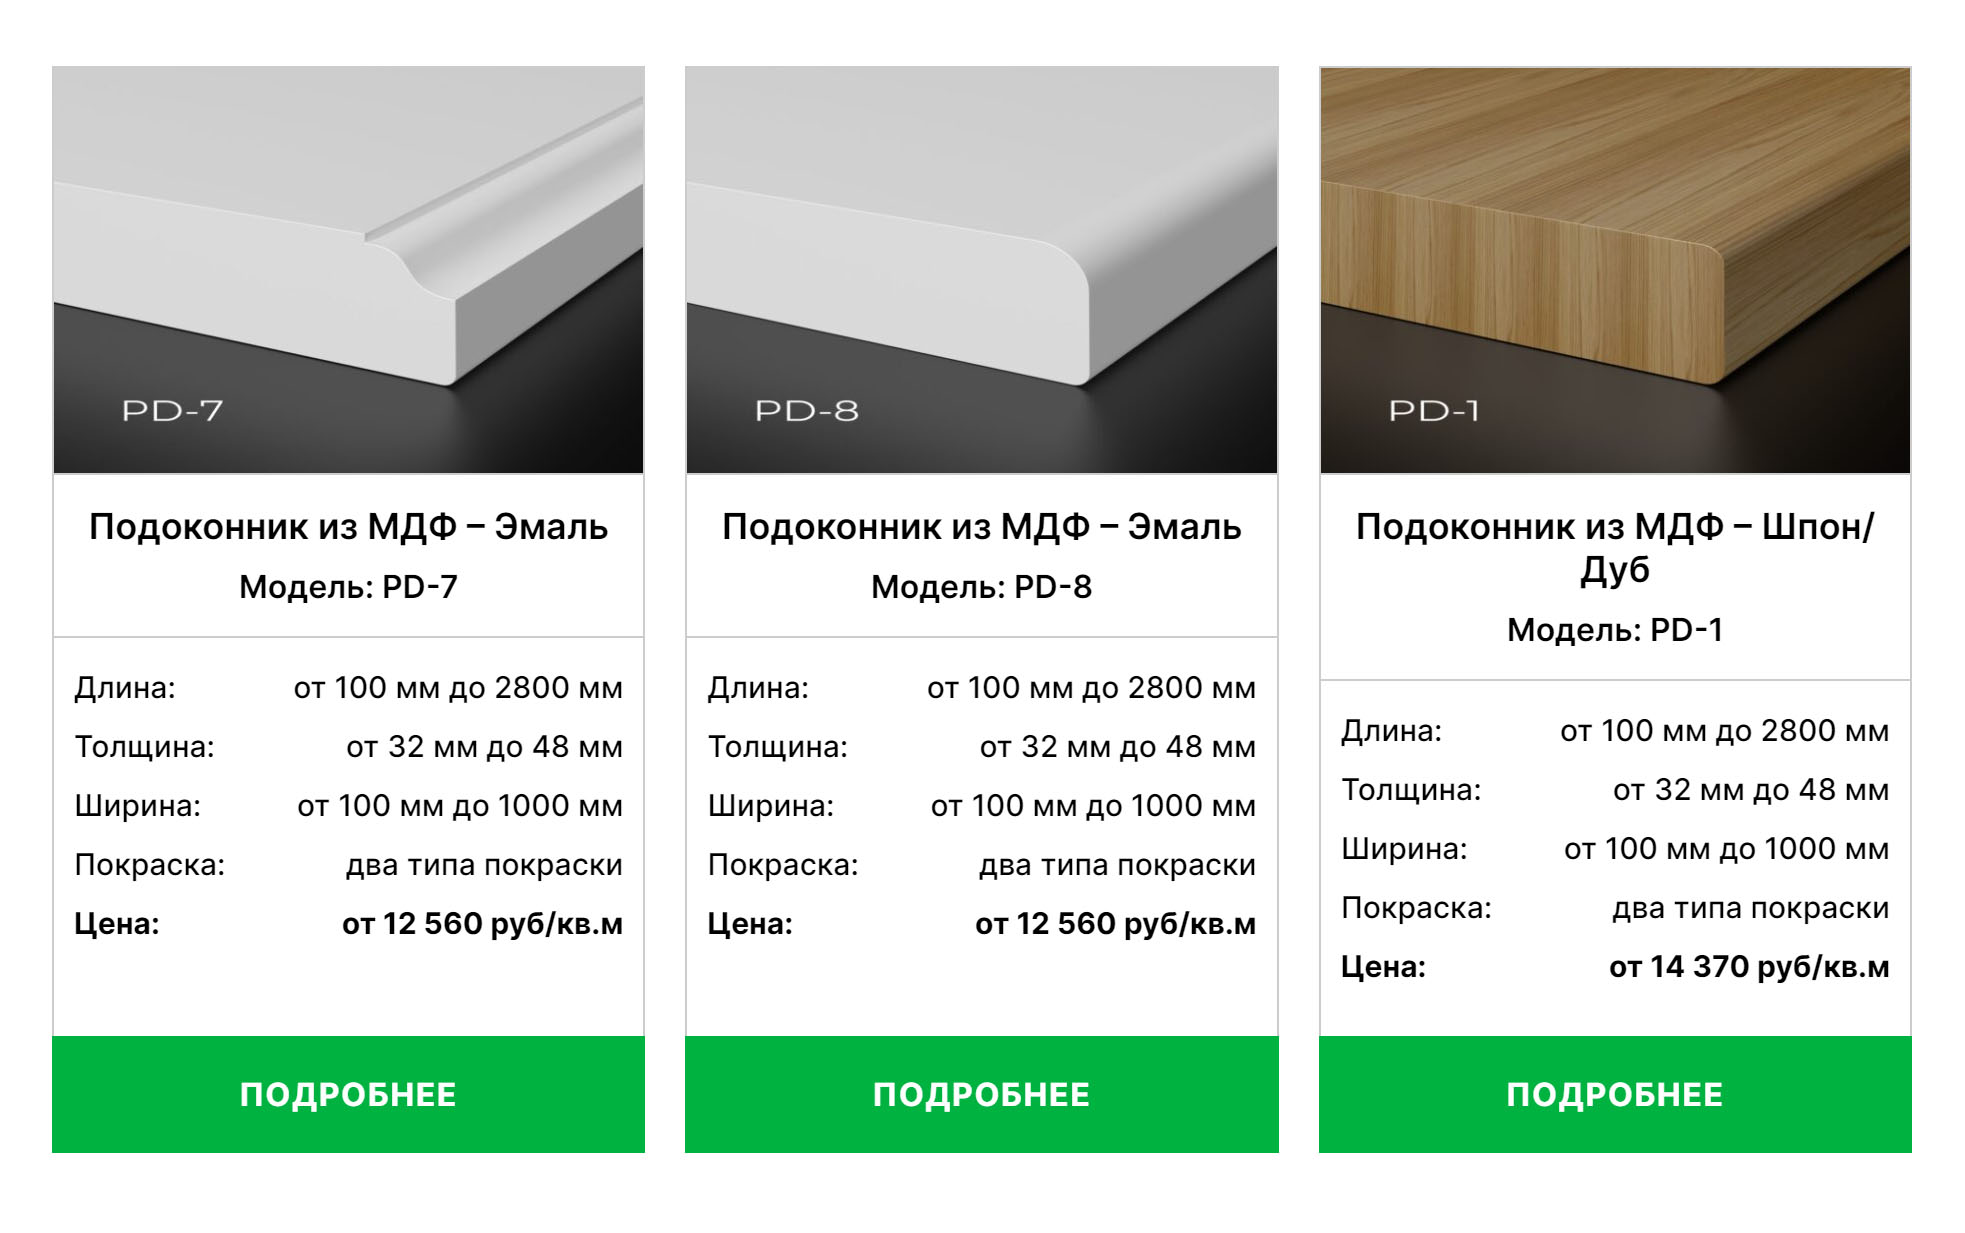 Подоконники из МДФ бывают покрыты эмалью или шпоном, есть варианты с разной формой кромки. Источник: profil-wood.ru